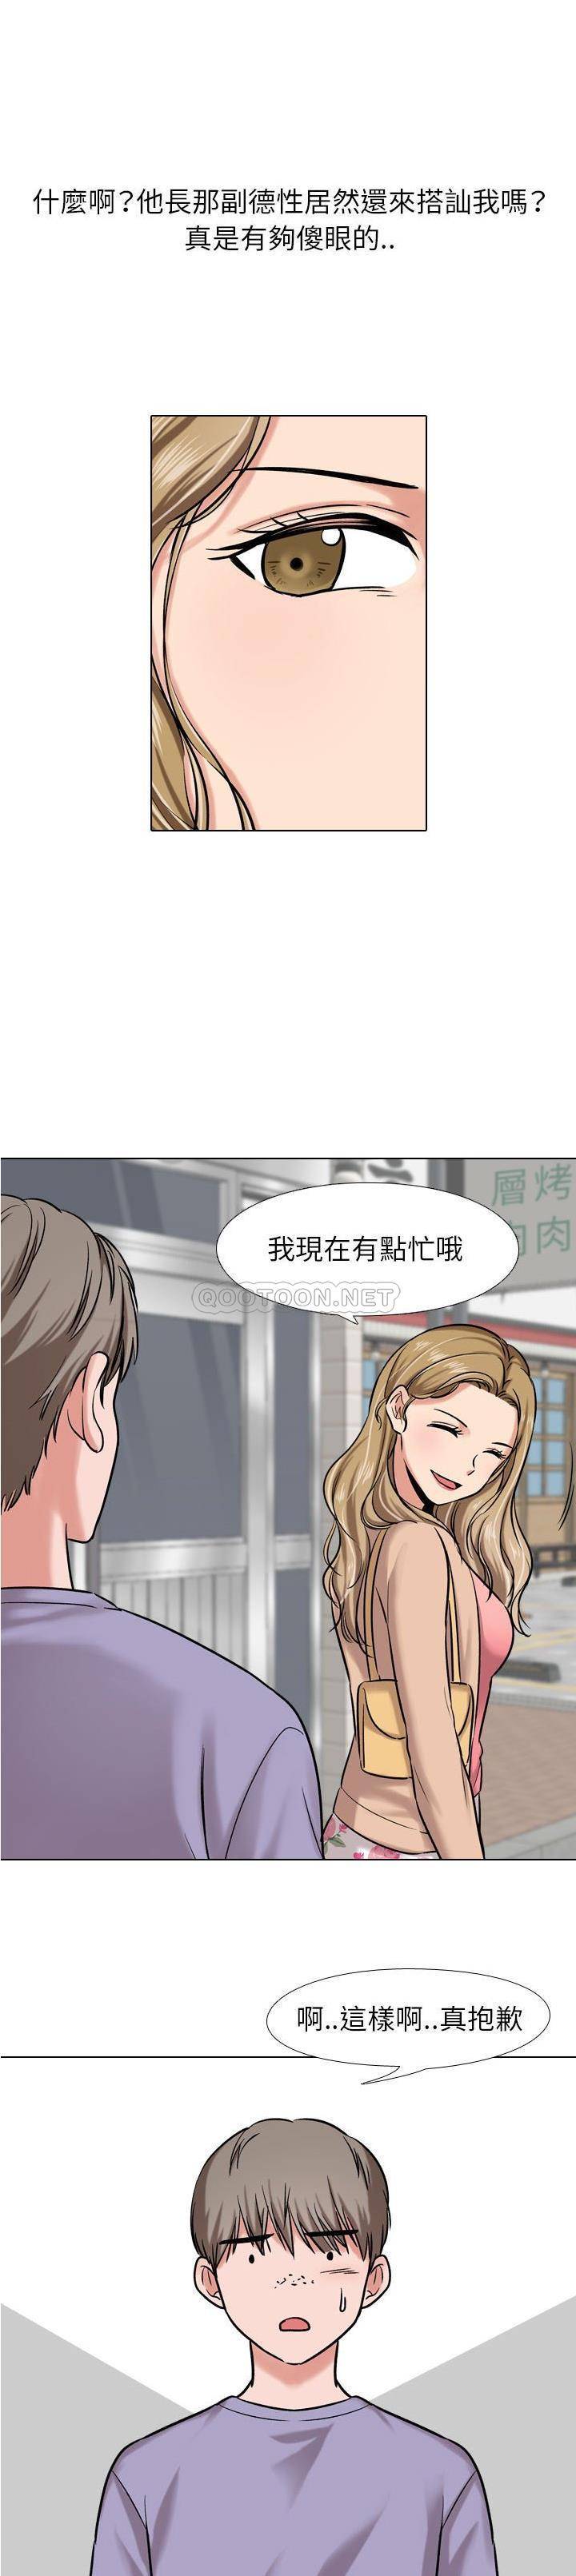 韩国污漫画 不單純友情 第5话 3